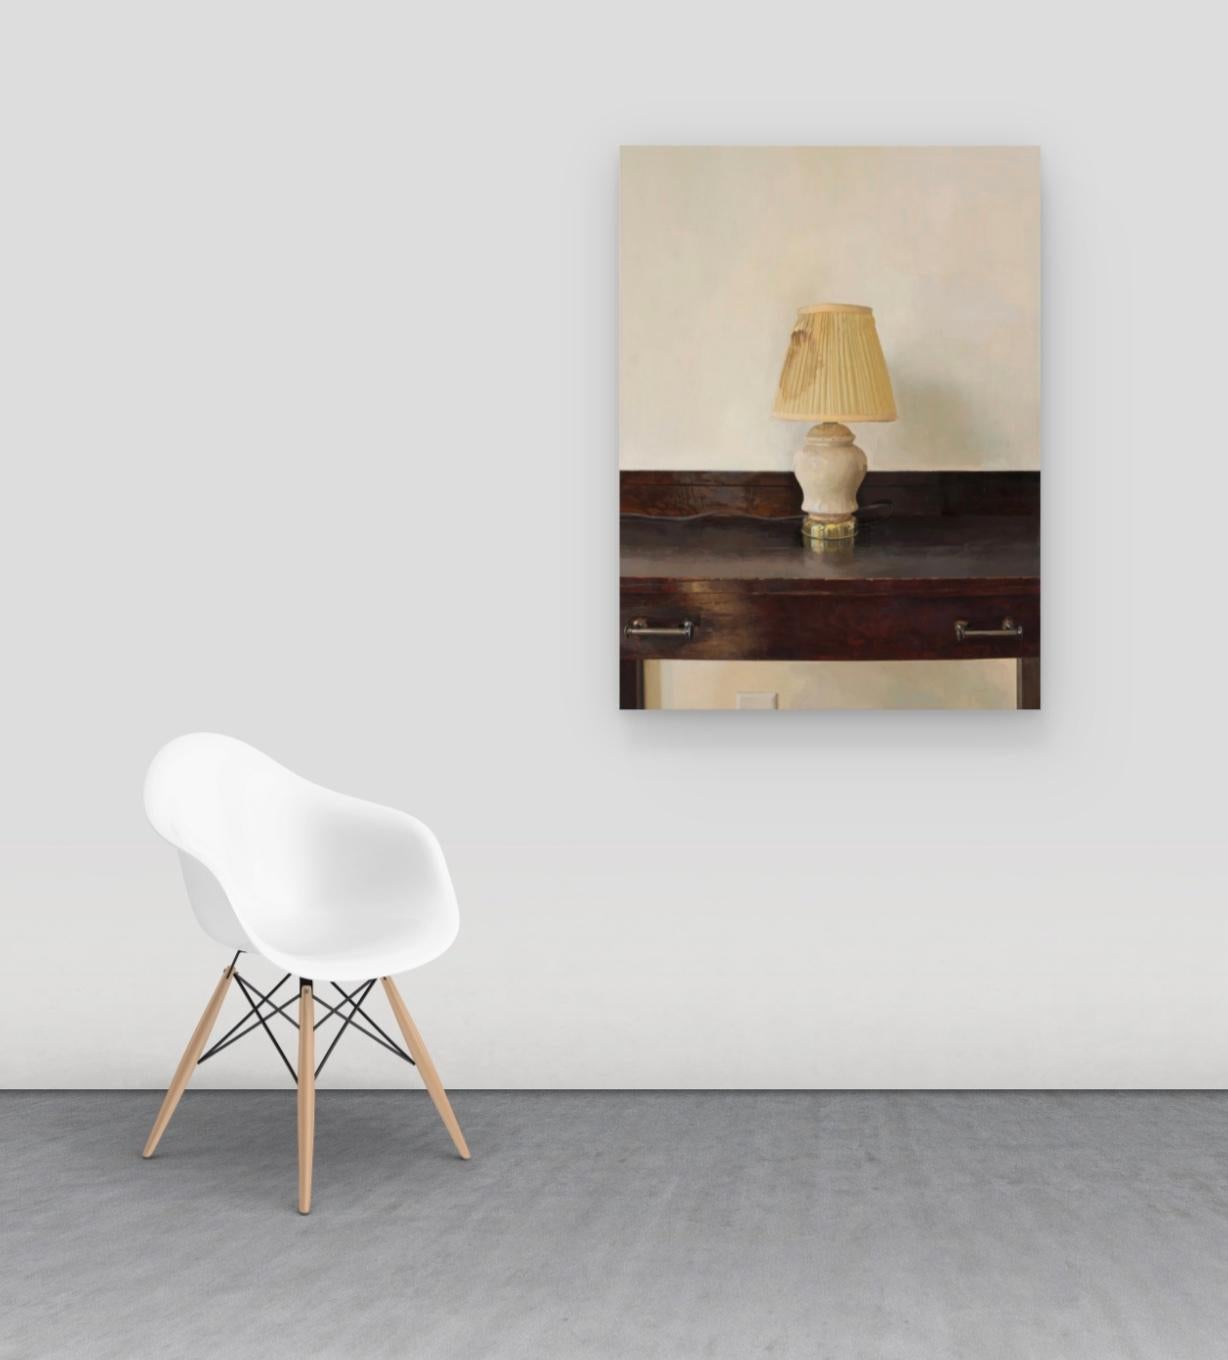 Lampe revisitée, nature morte avec lampe sur bureau en bois d'acajou brun foncé - Contemporain Painting par Brett Eberhardt